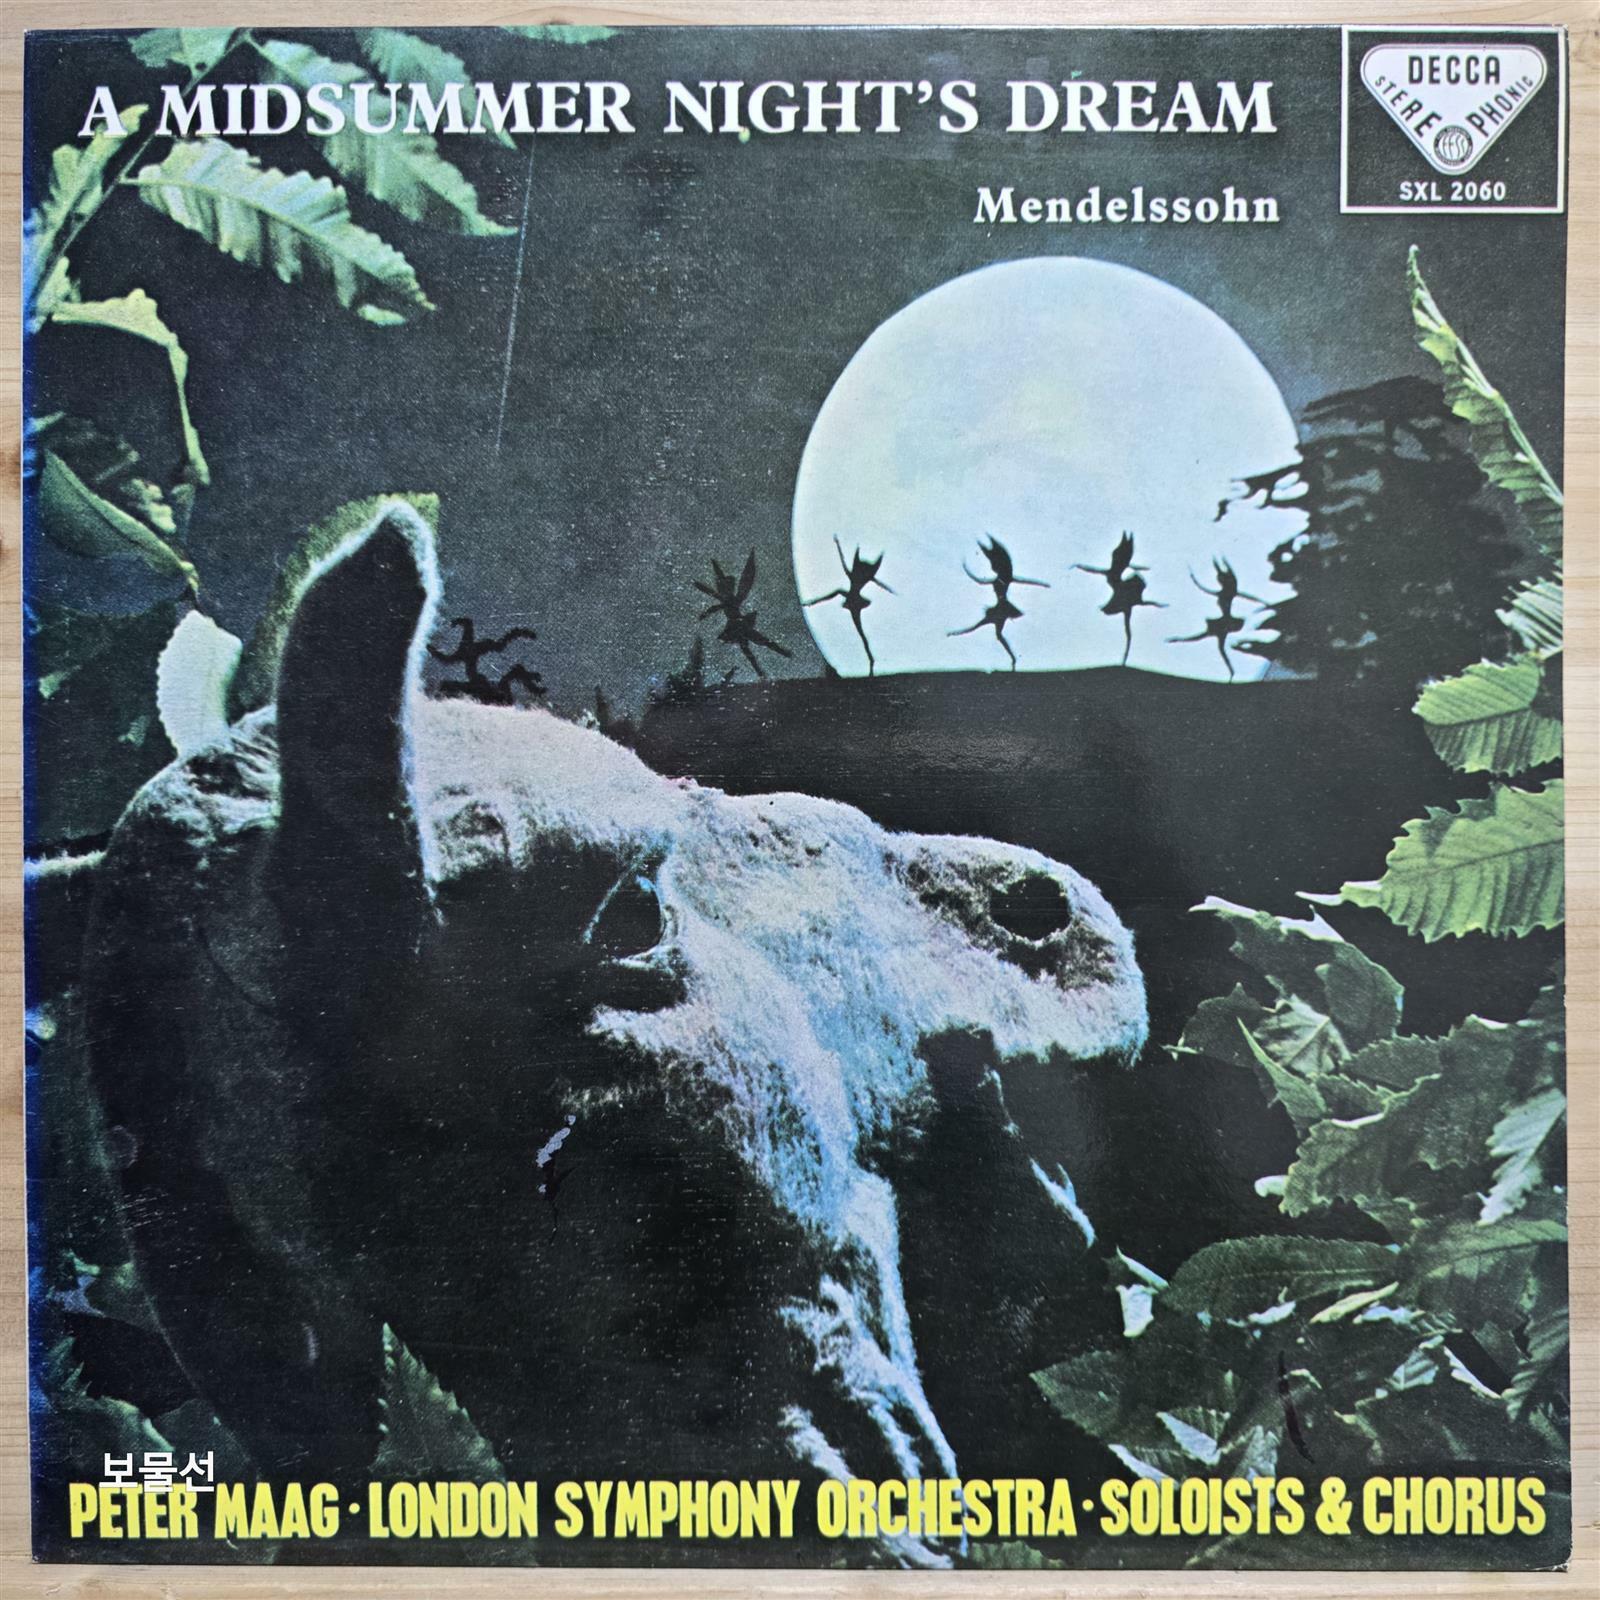 [중고] [LP] 페터 막 (Peter Maag) - 멘델스존 : 한 여름밤의 꿈 (Mendelssohn : A Midsummer Night`s Dream)